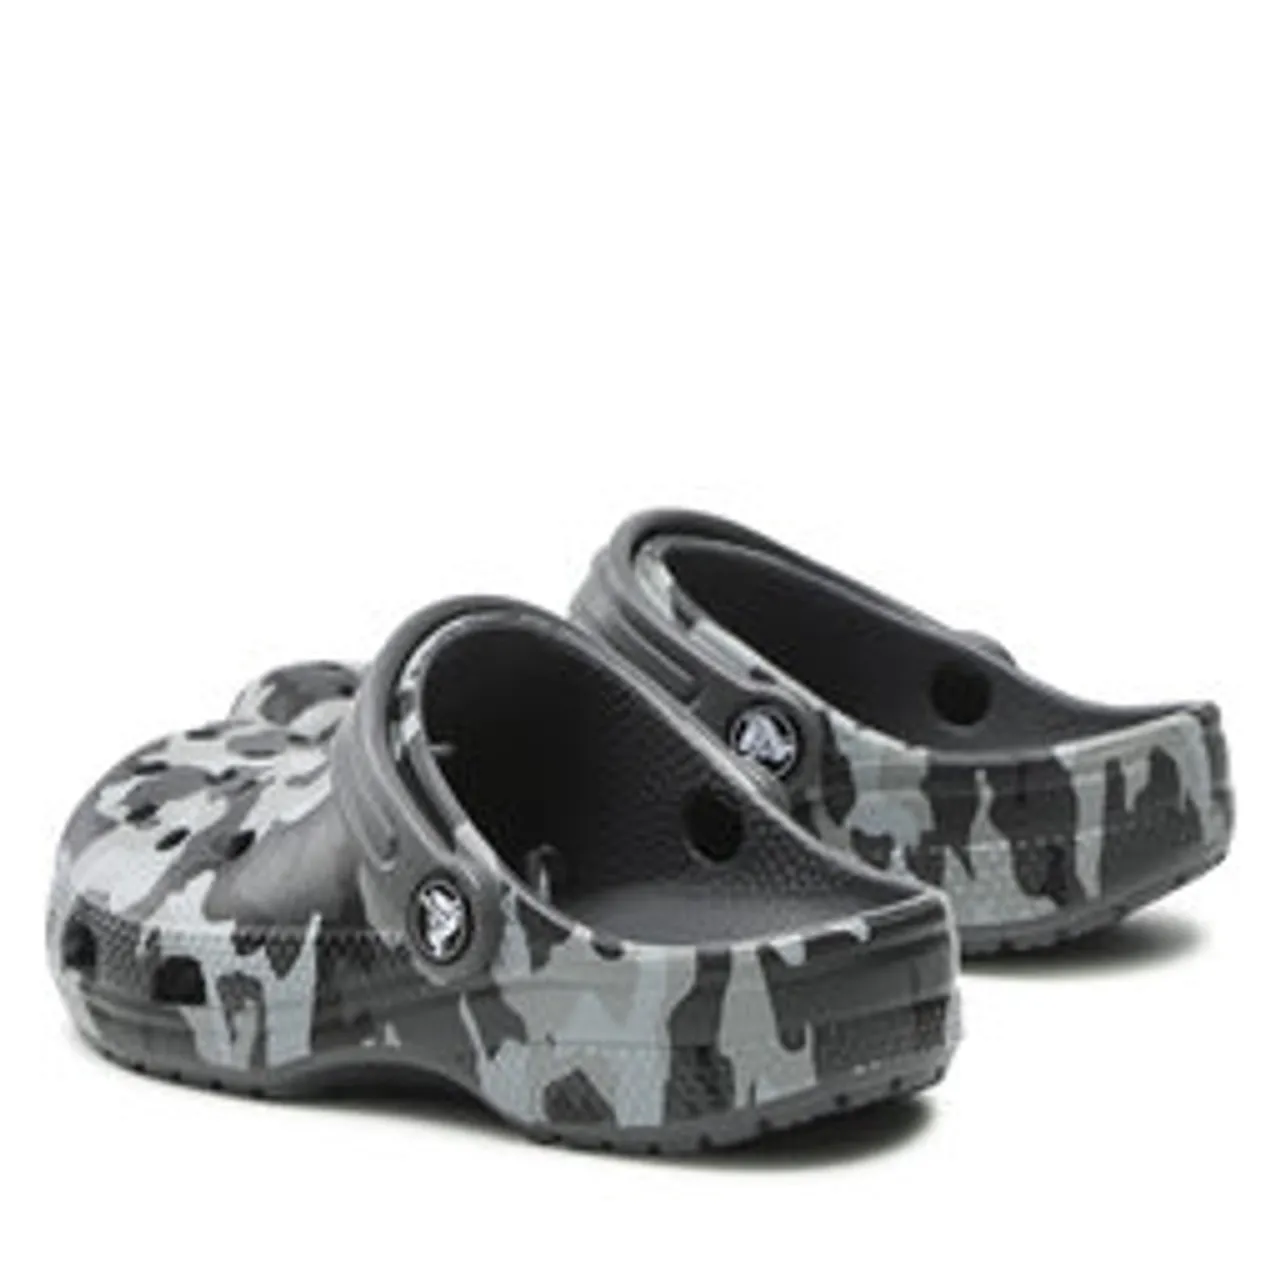 Pantoletten Crocs Classic Camo Clog 207594 Black/Grey